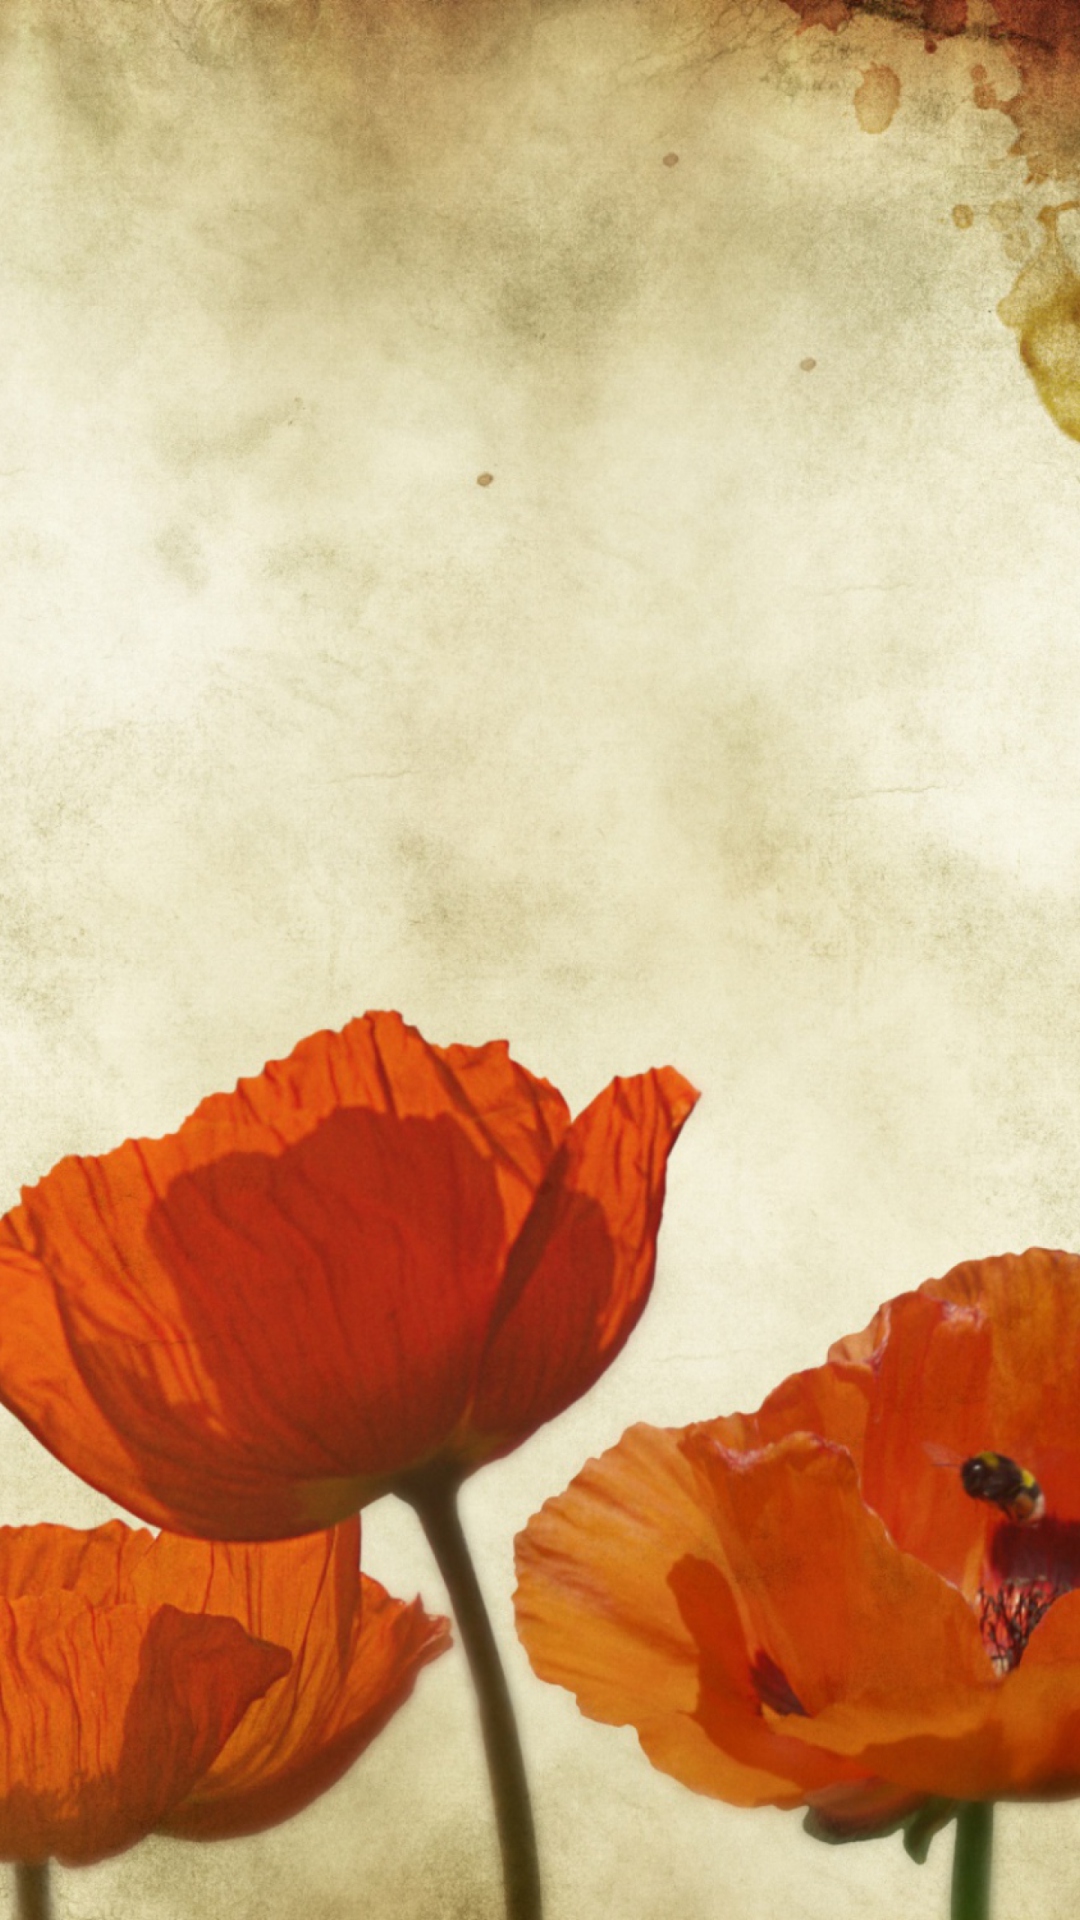 Poppies Vinatge wallpaper 1080x1920